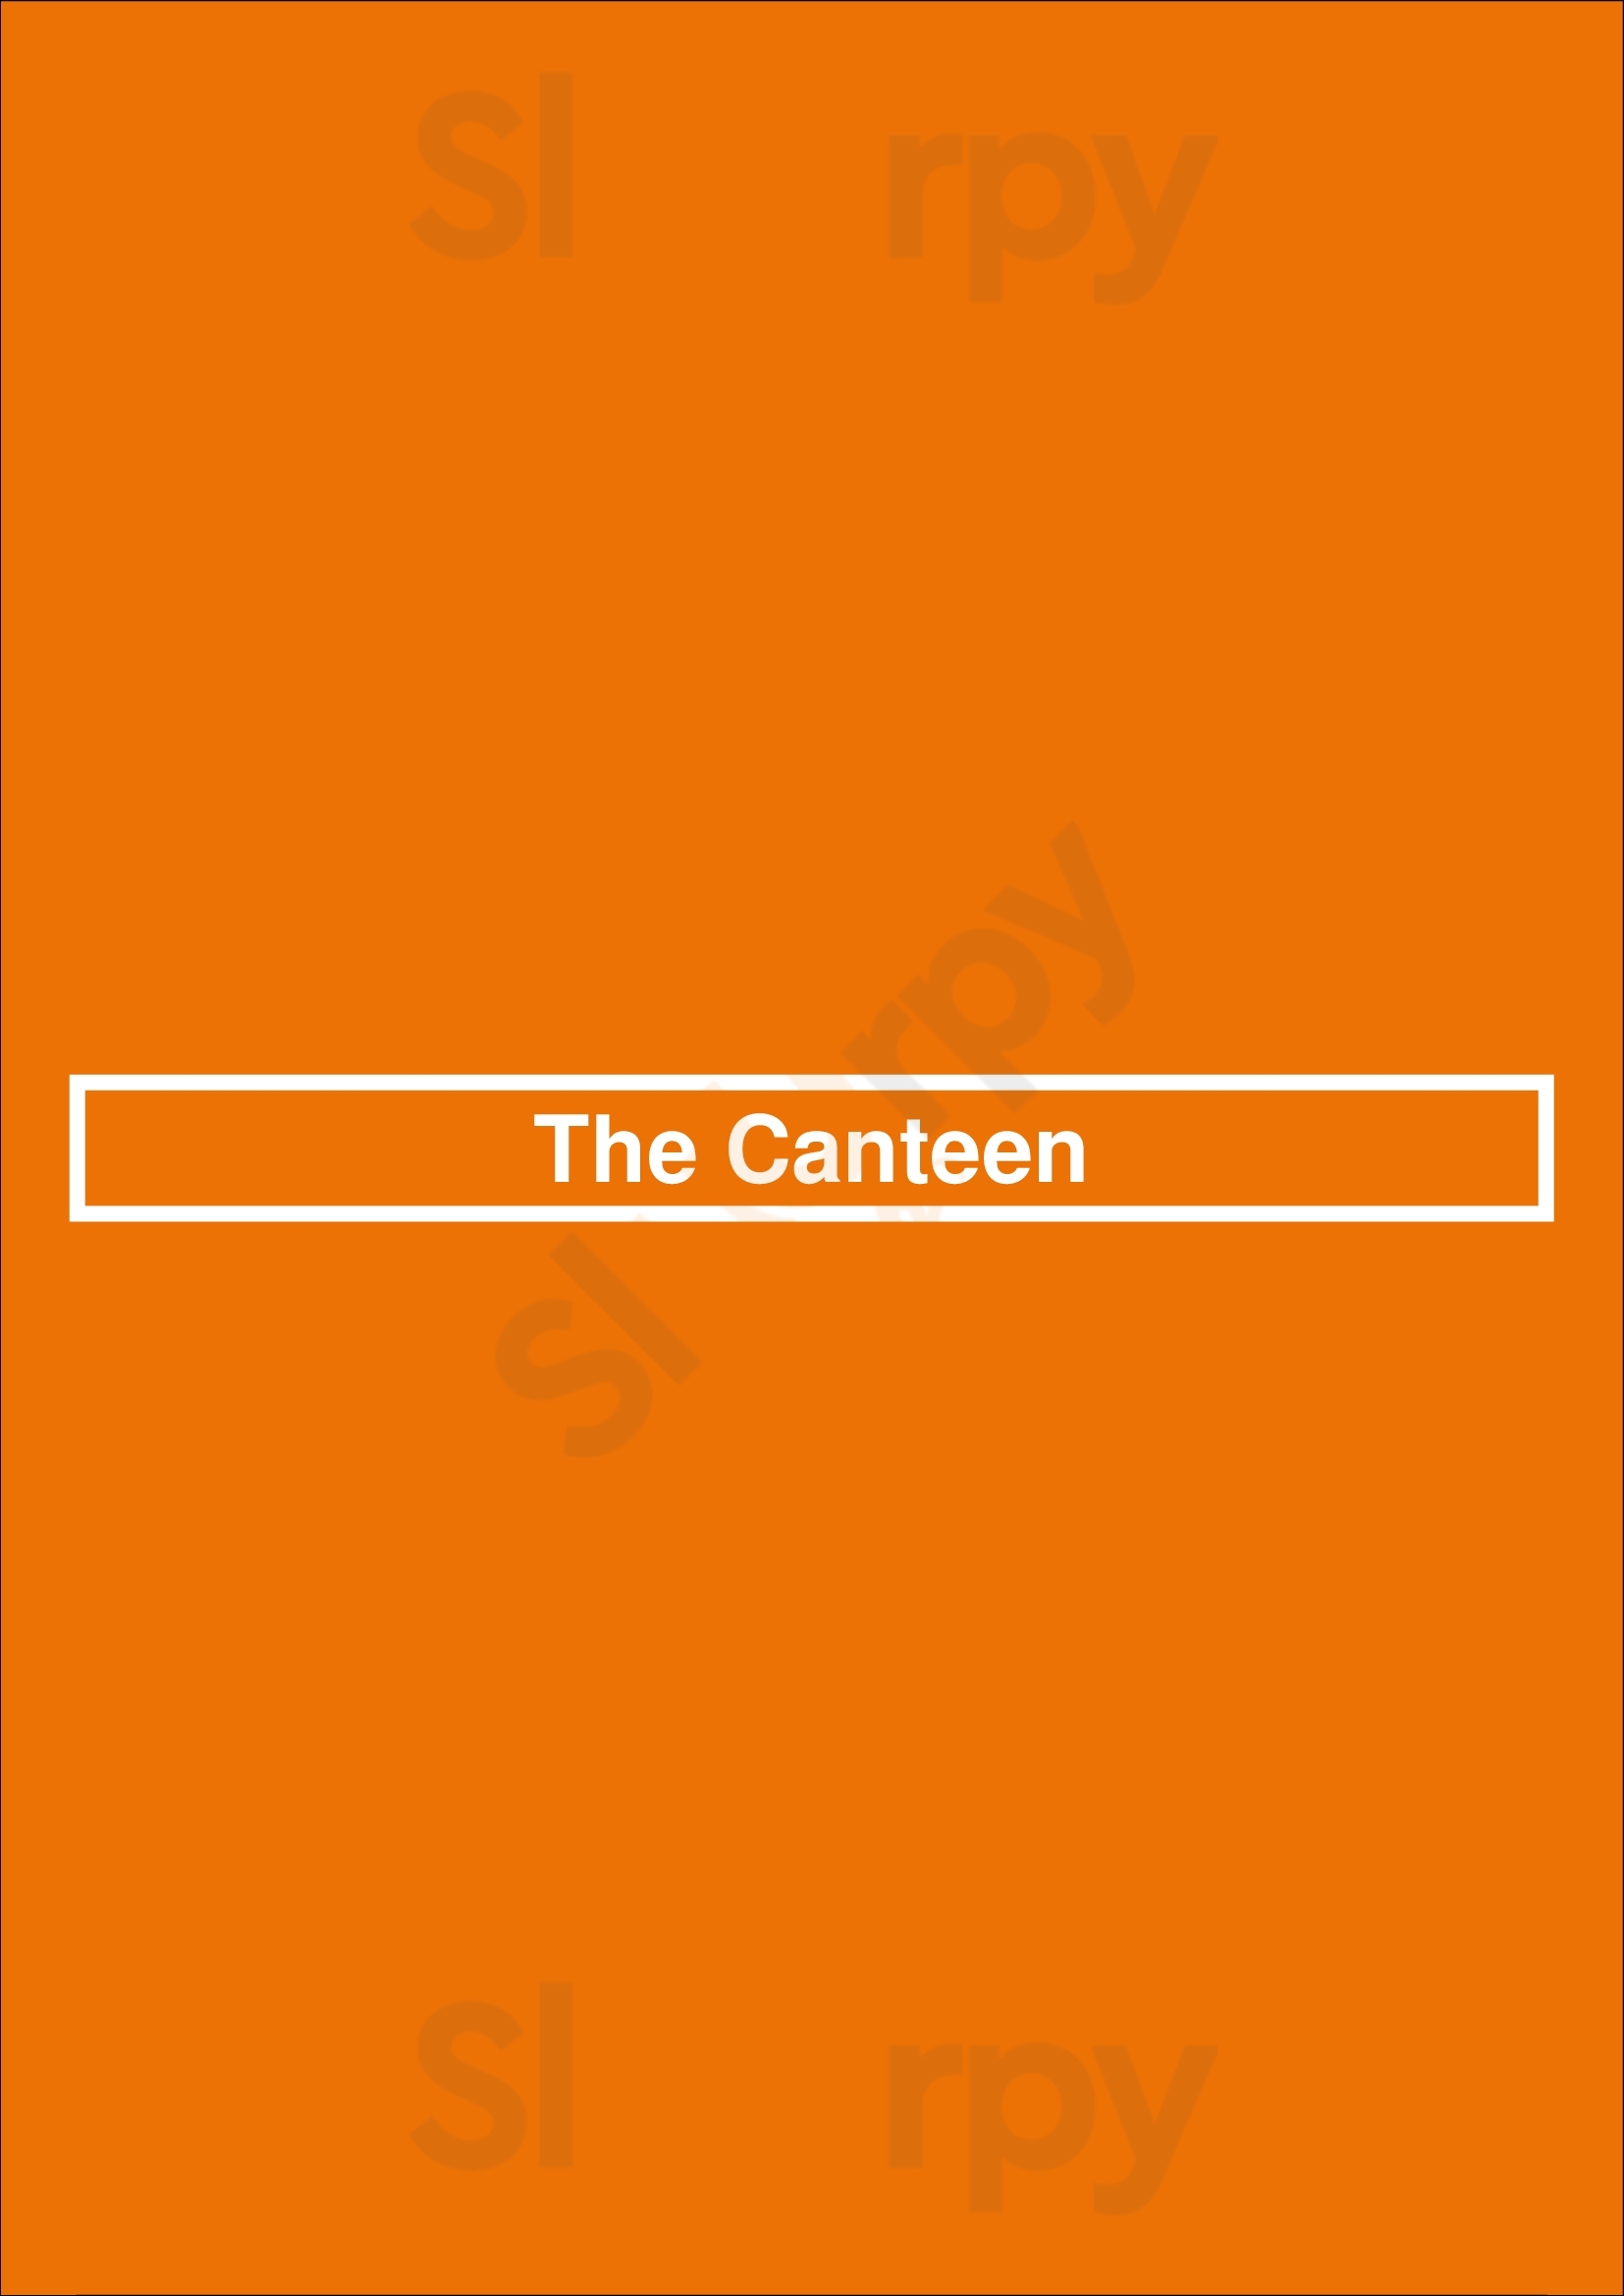 The Canteen Dartmouth Menu - 1